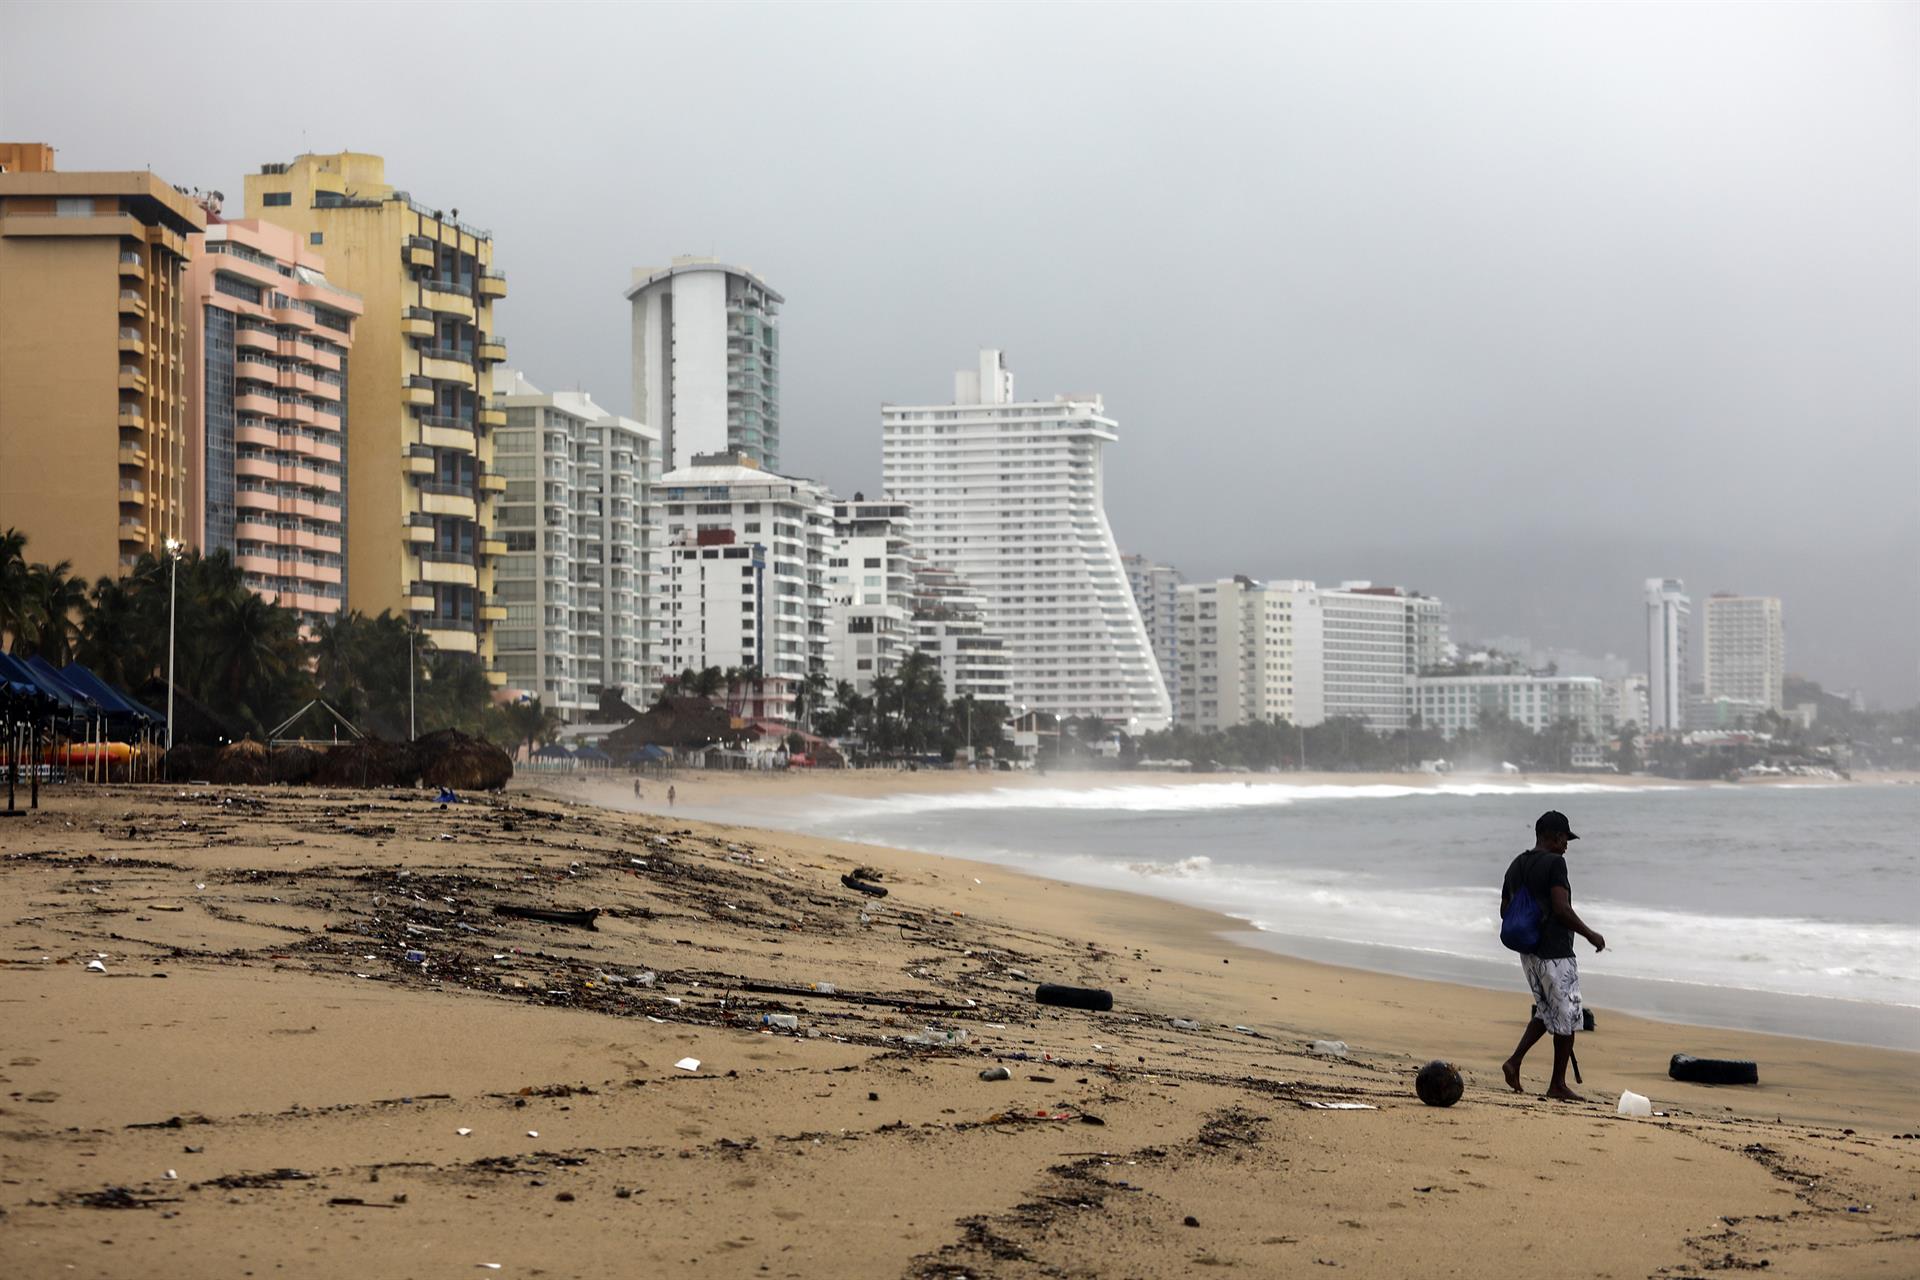 Una persona camina por una playa llena de basura debido a las fuertes lluvias en el balneario de Acapulco, estado de Guerrero (México). Imagen de archivo. (Foto Prensa Libre: EFE/ David Guzmán)